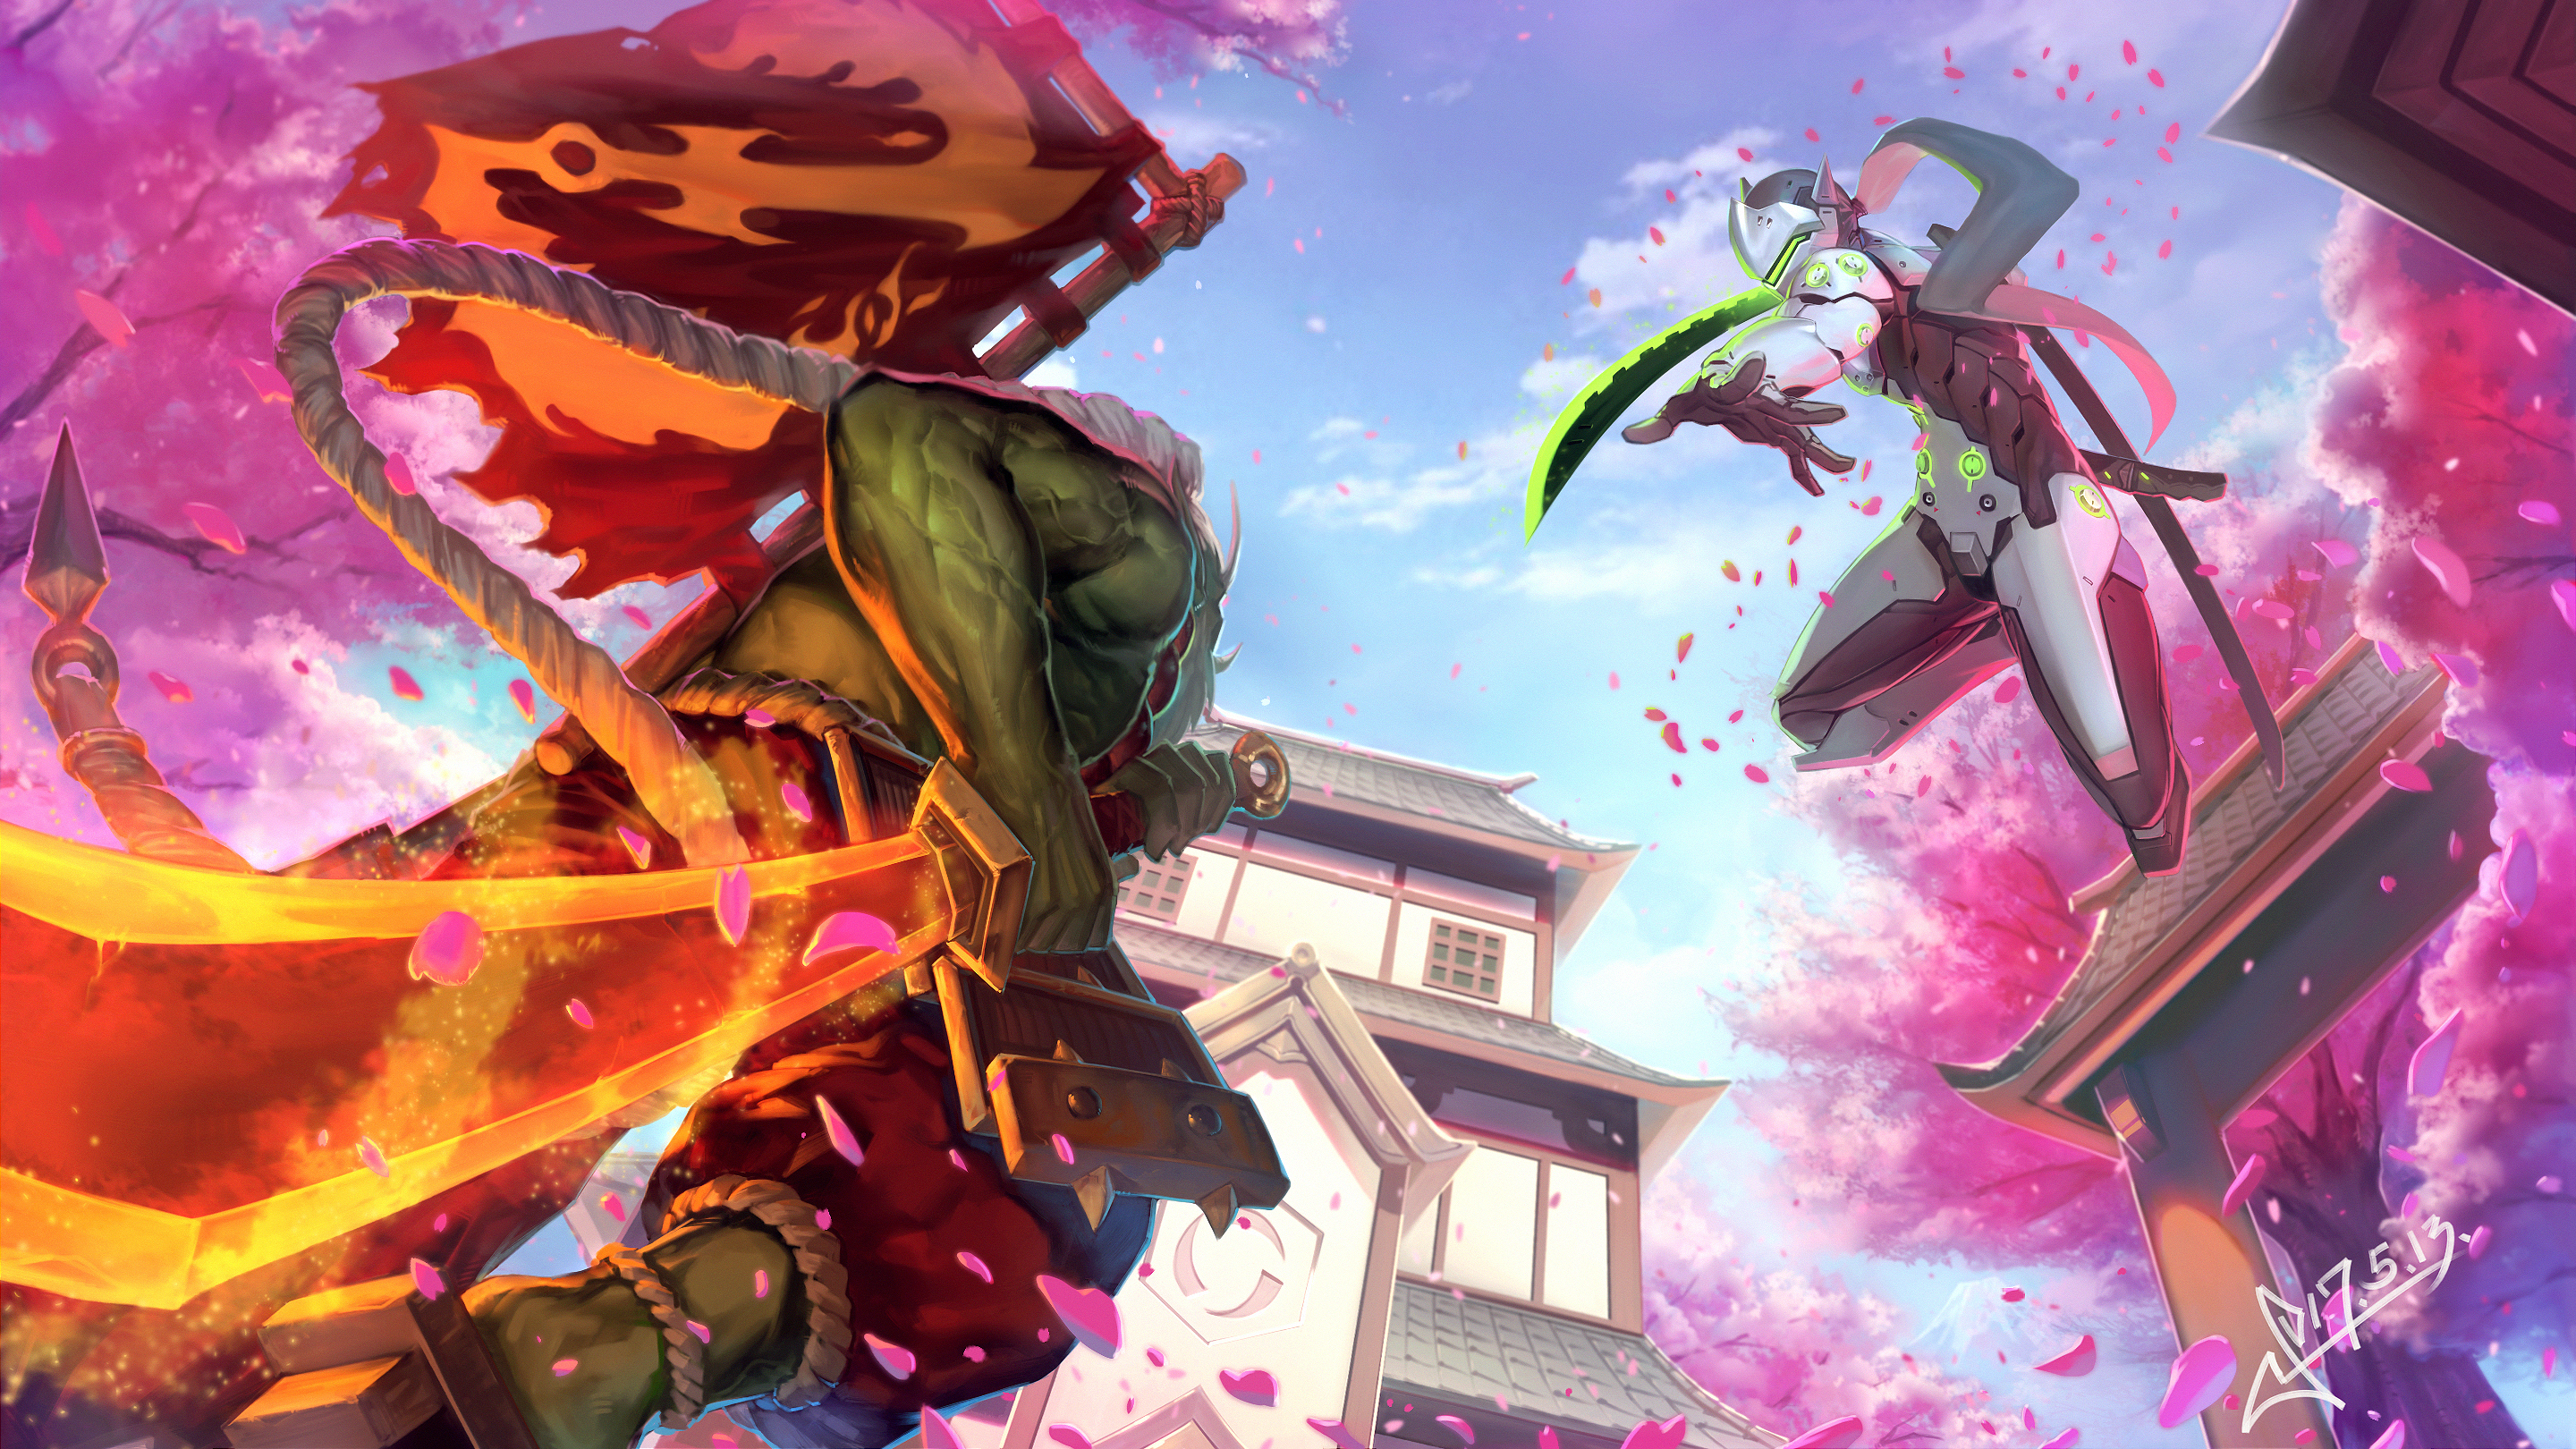 sakura, heroes of the storm, video game, overwatch, battle, genji (overwatch), samurai, sword